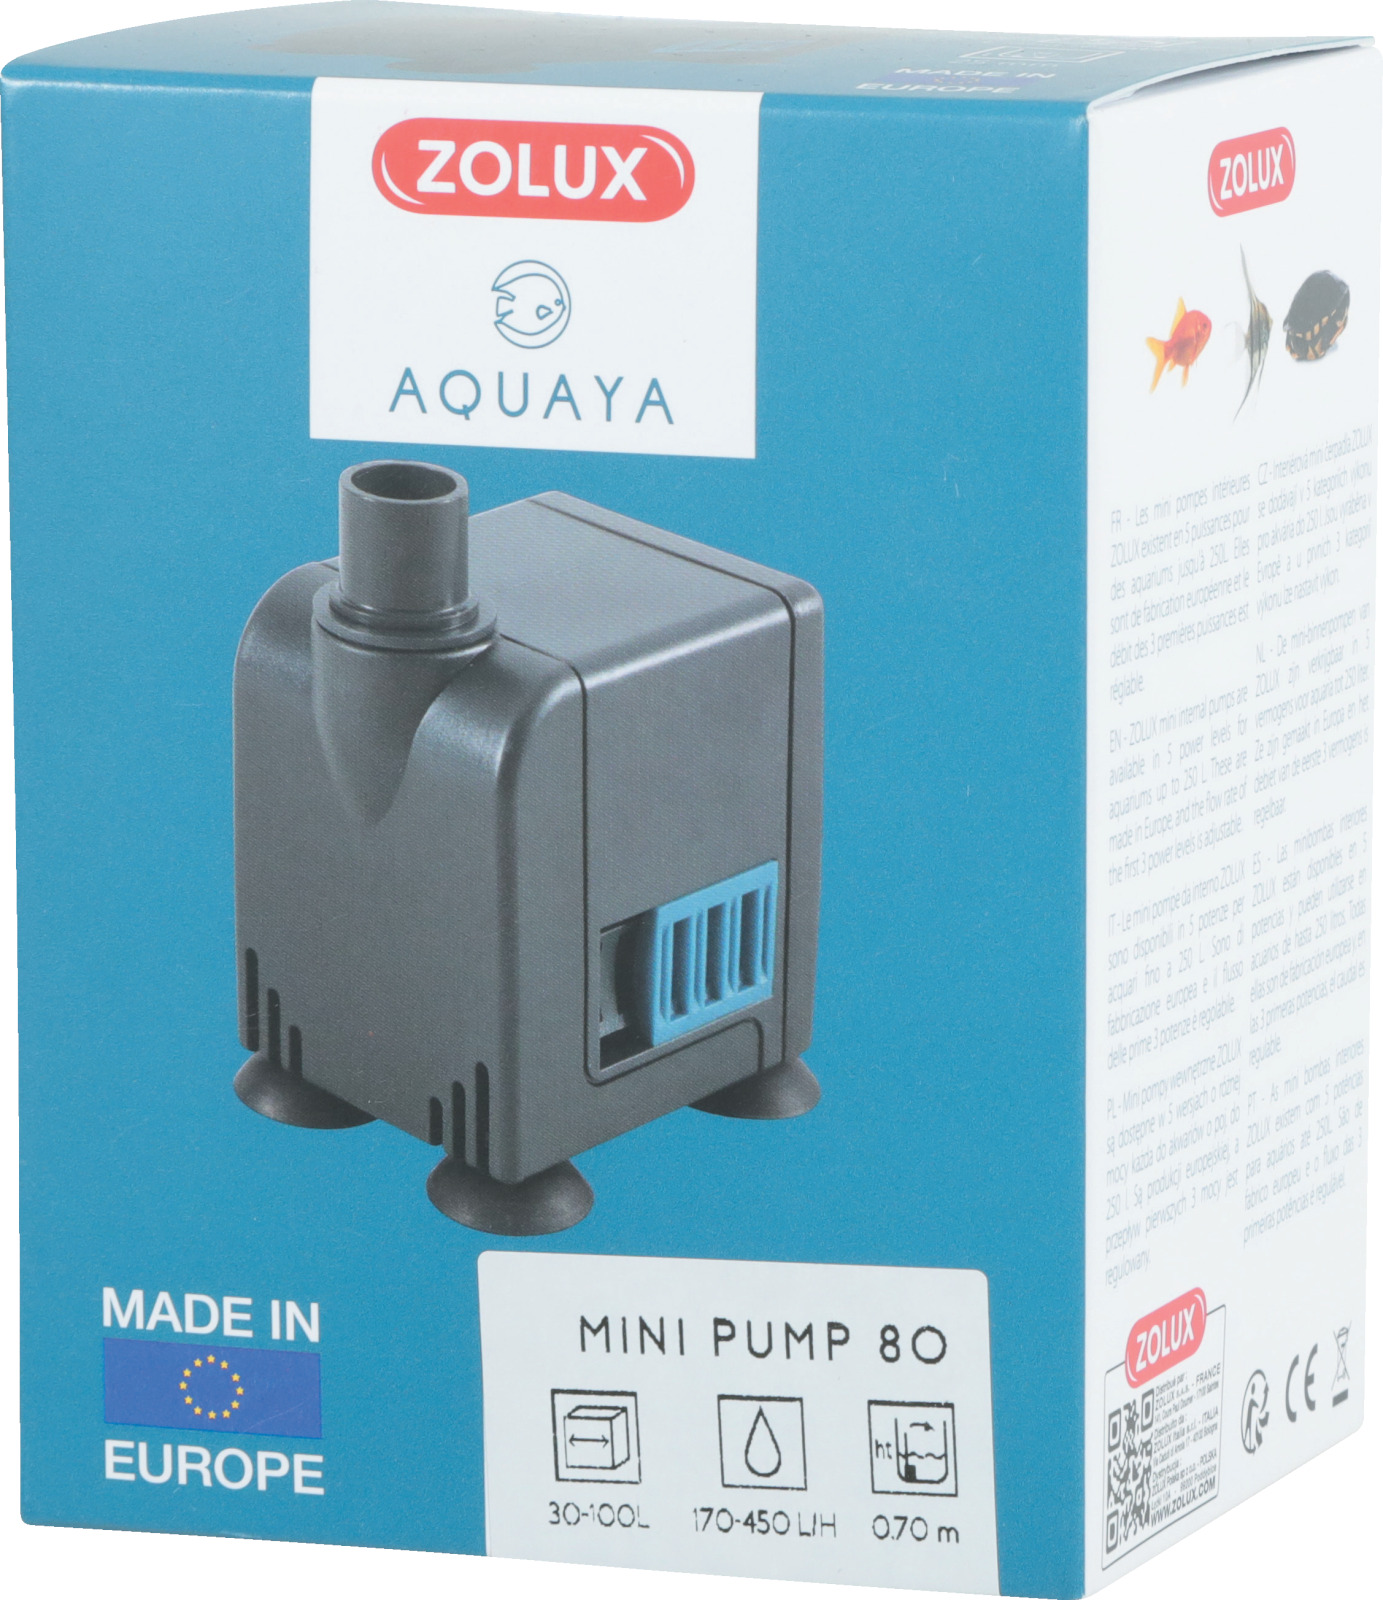 ZOLUX Aquaya Mini Pump 80 pompe avec débit réglable de 170 à 450 L/h pour aquarium de 30 à 100 L